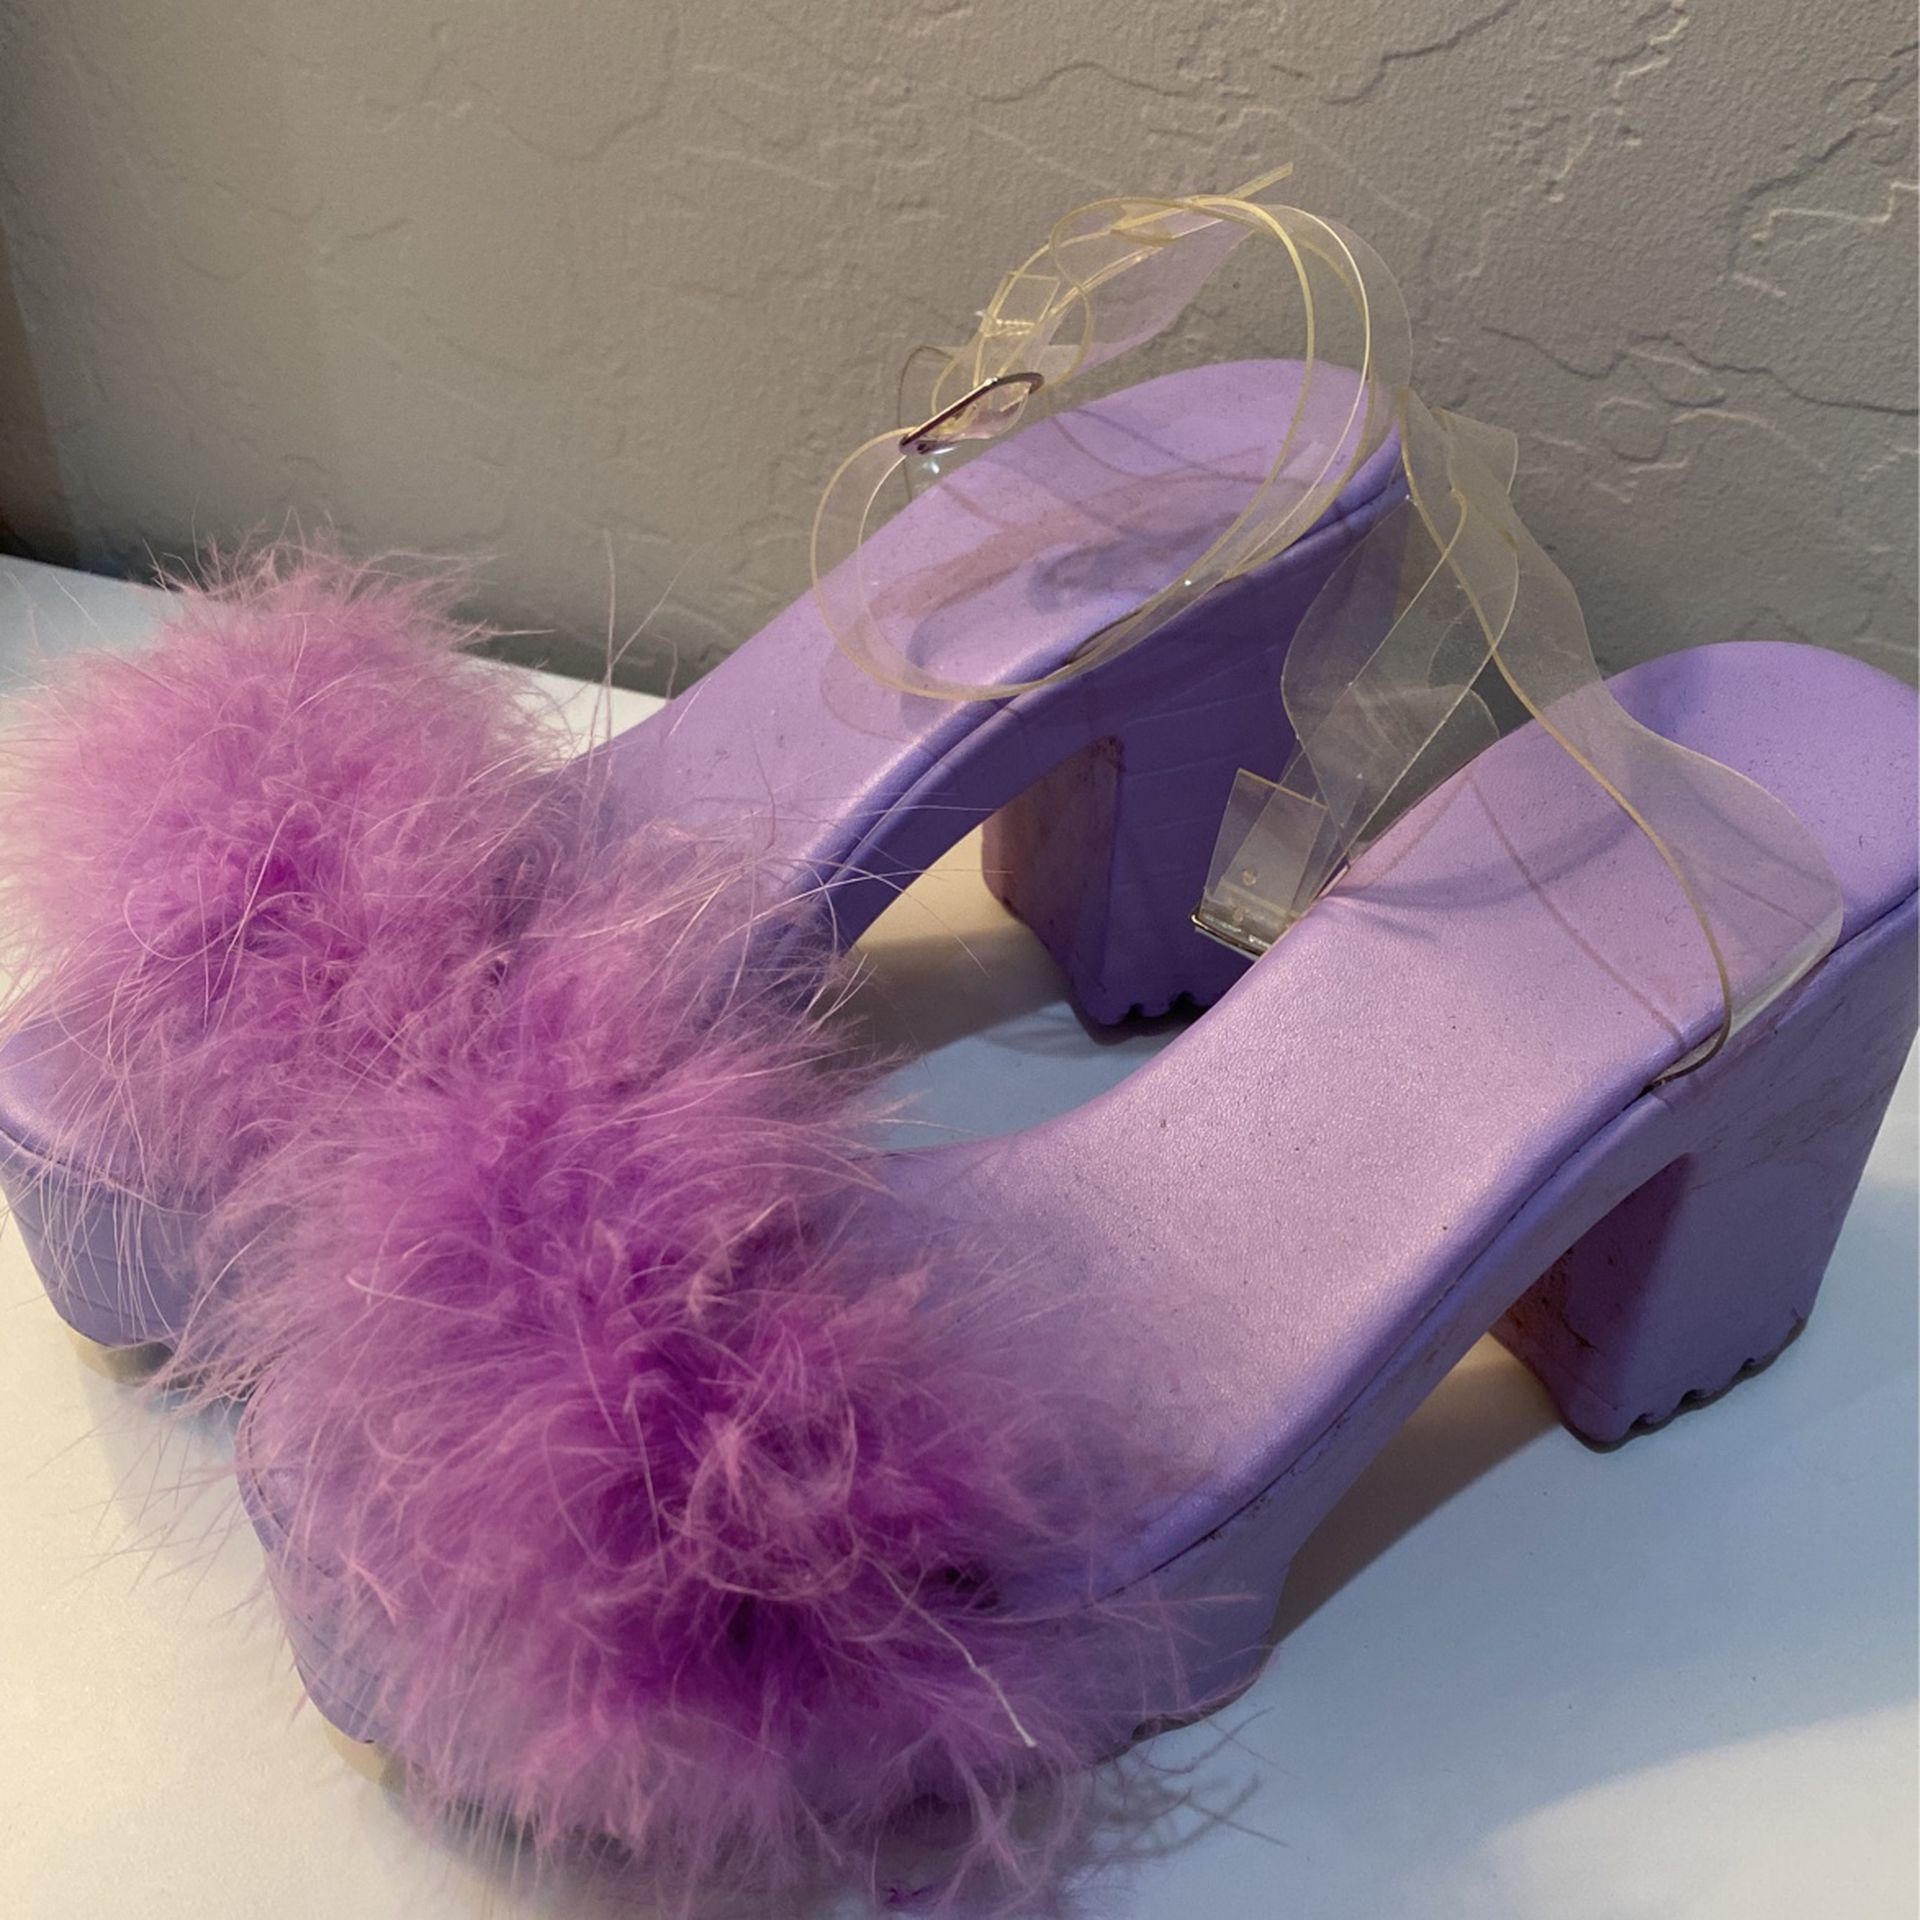 Fluffy Purple Heels Size 5 US